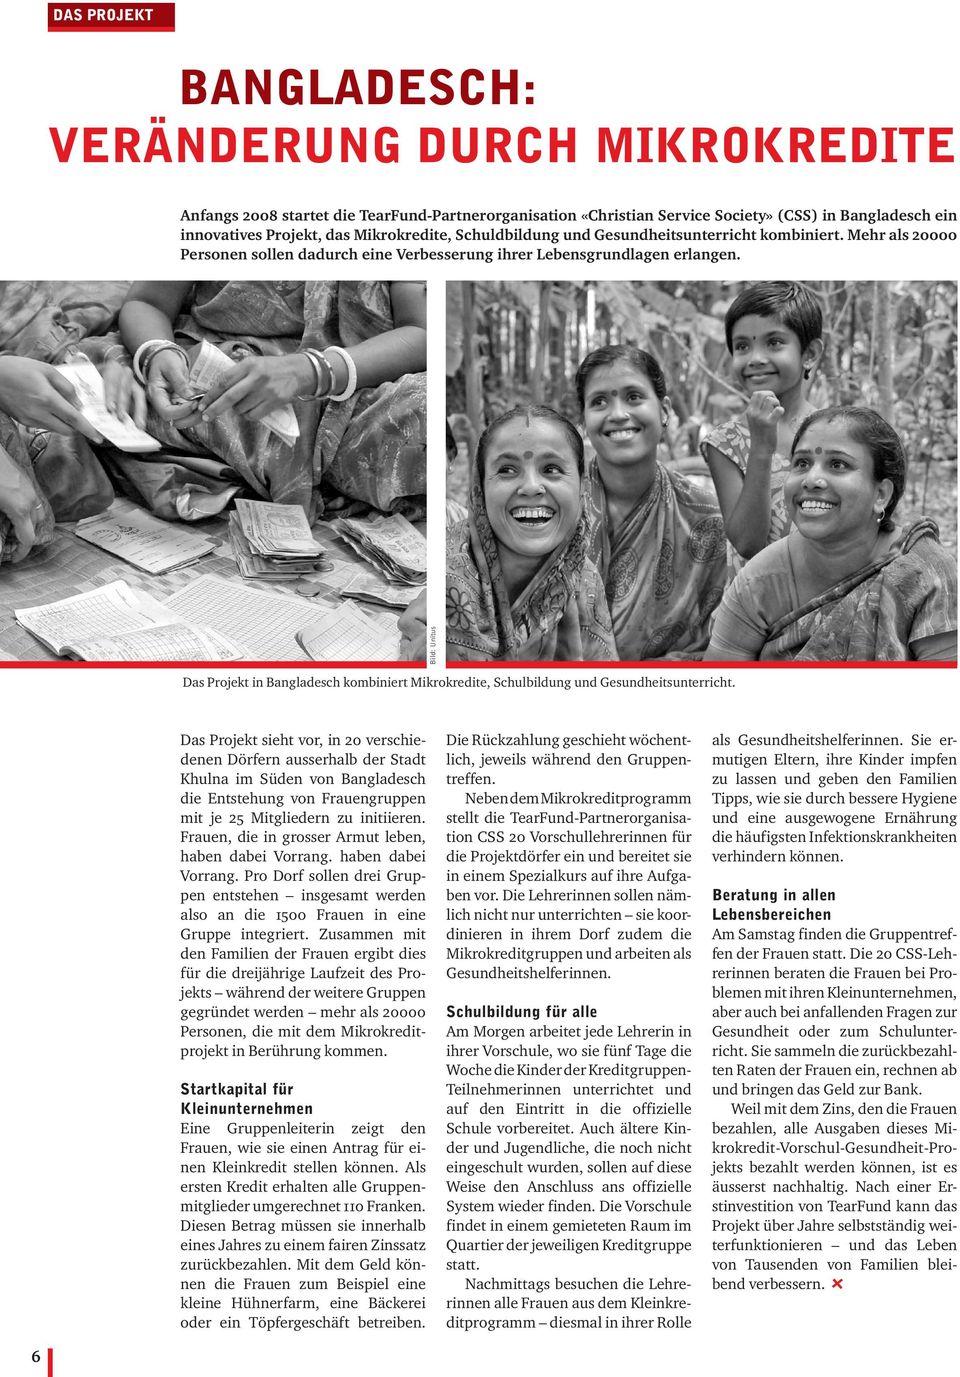 Bild: Unitus Das Projekt in Bangladesch kombiniert Mikrokredite, Schulbildung und Gesundheitsunterricht.